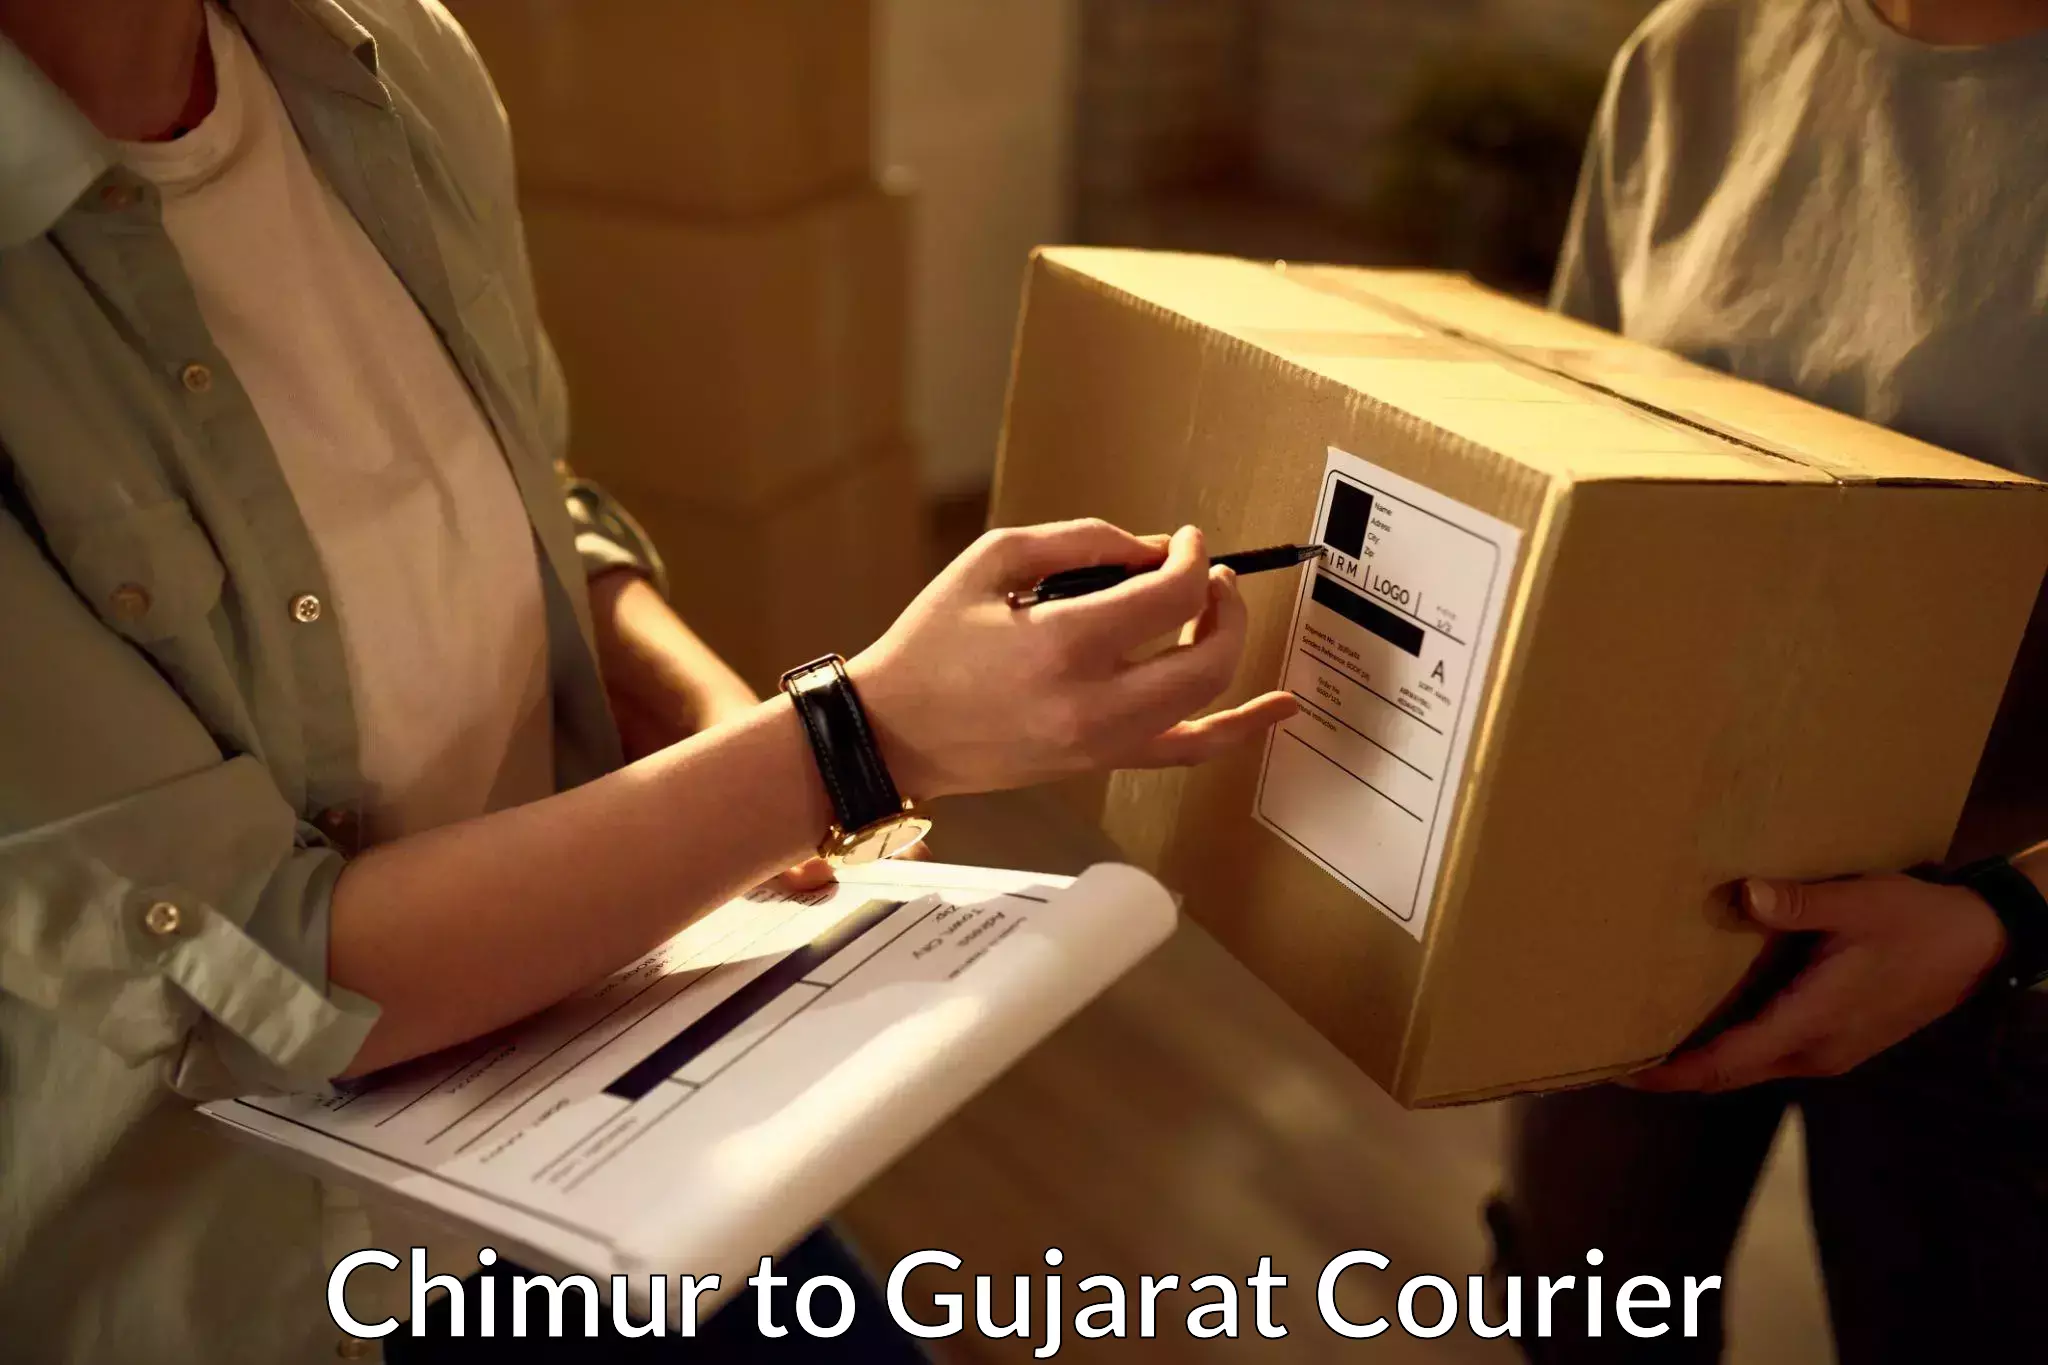 Express logistics providers Chimur to Gujarat